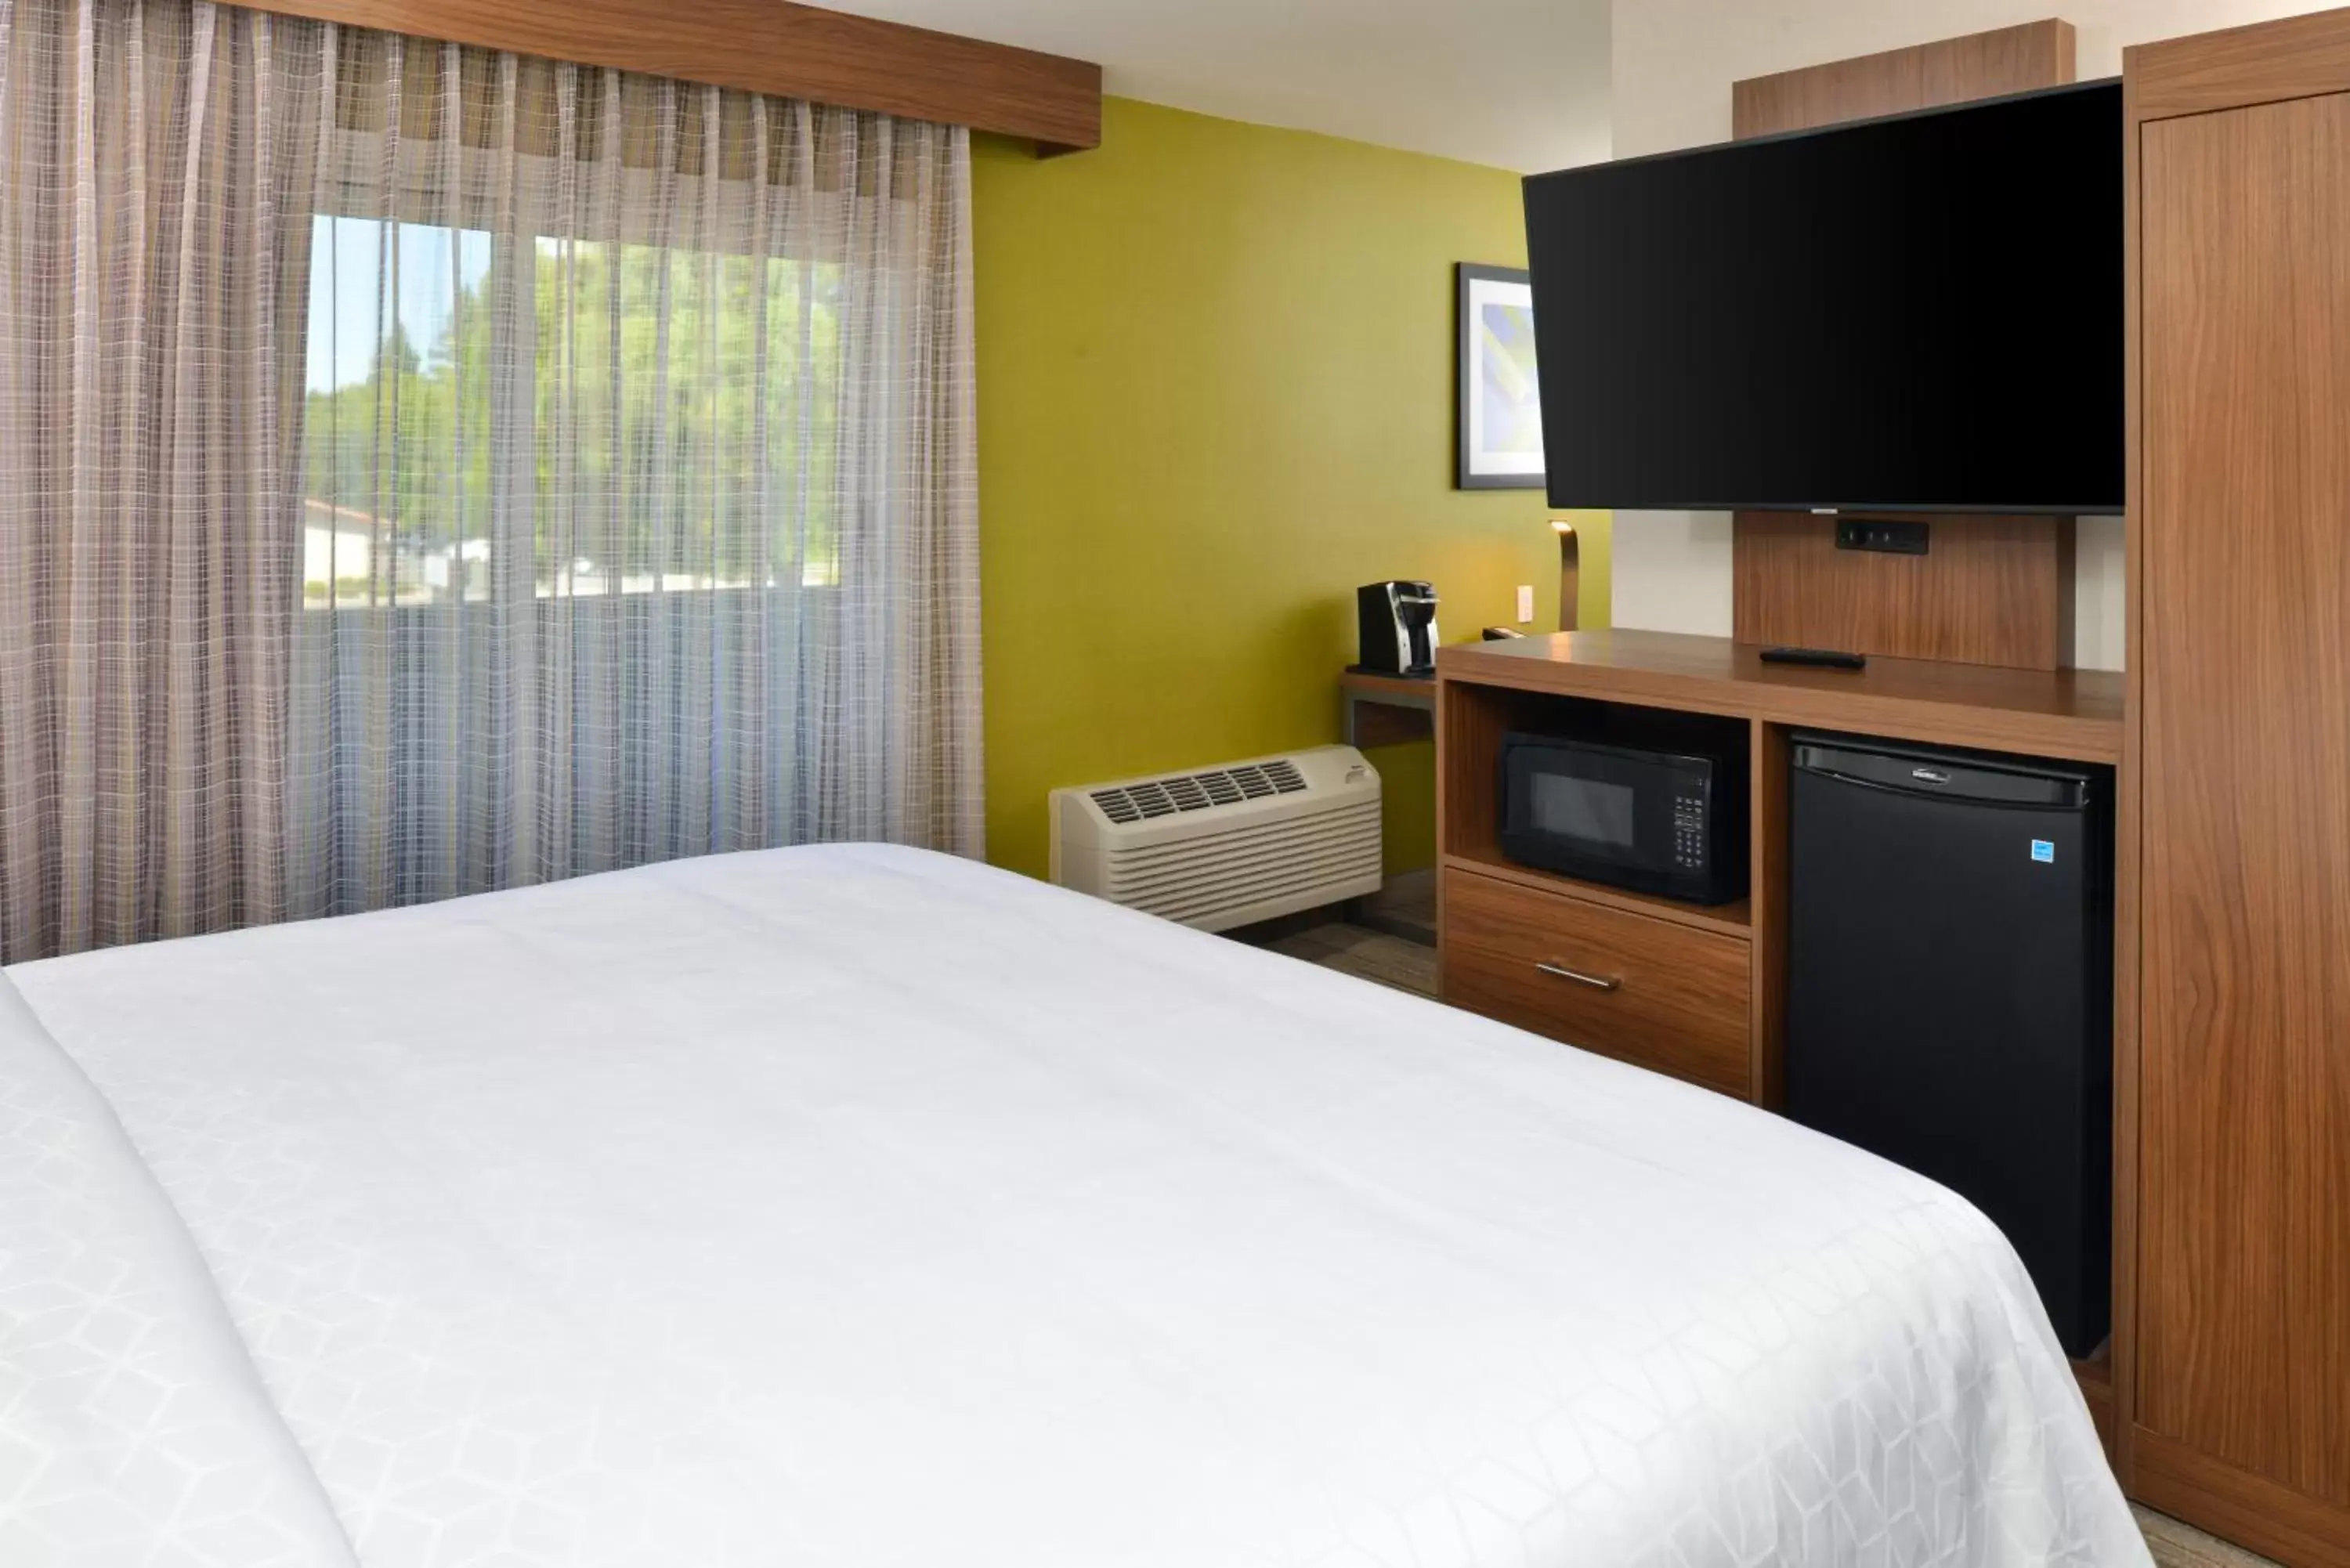 Guests in Holiday Inn Express - Santa Rosa North, an IHG Hotel